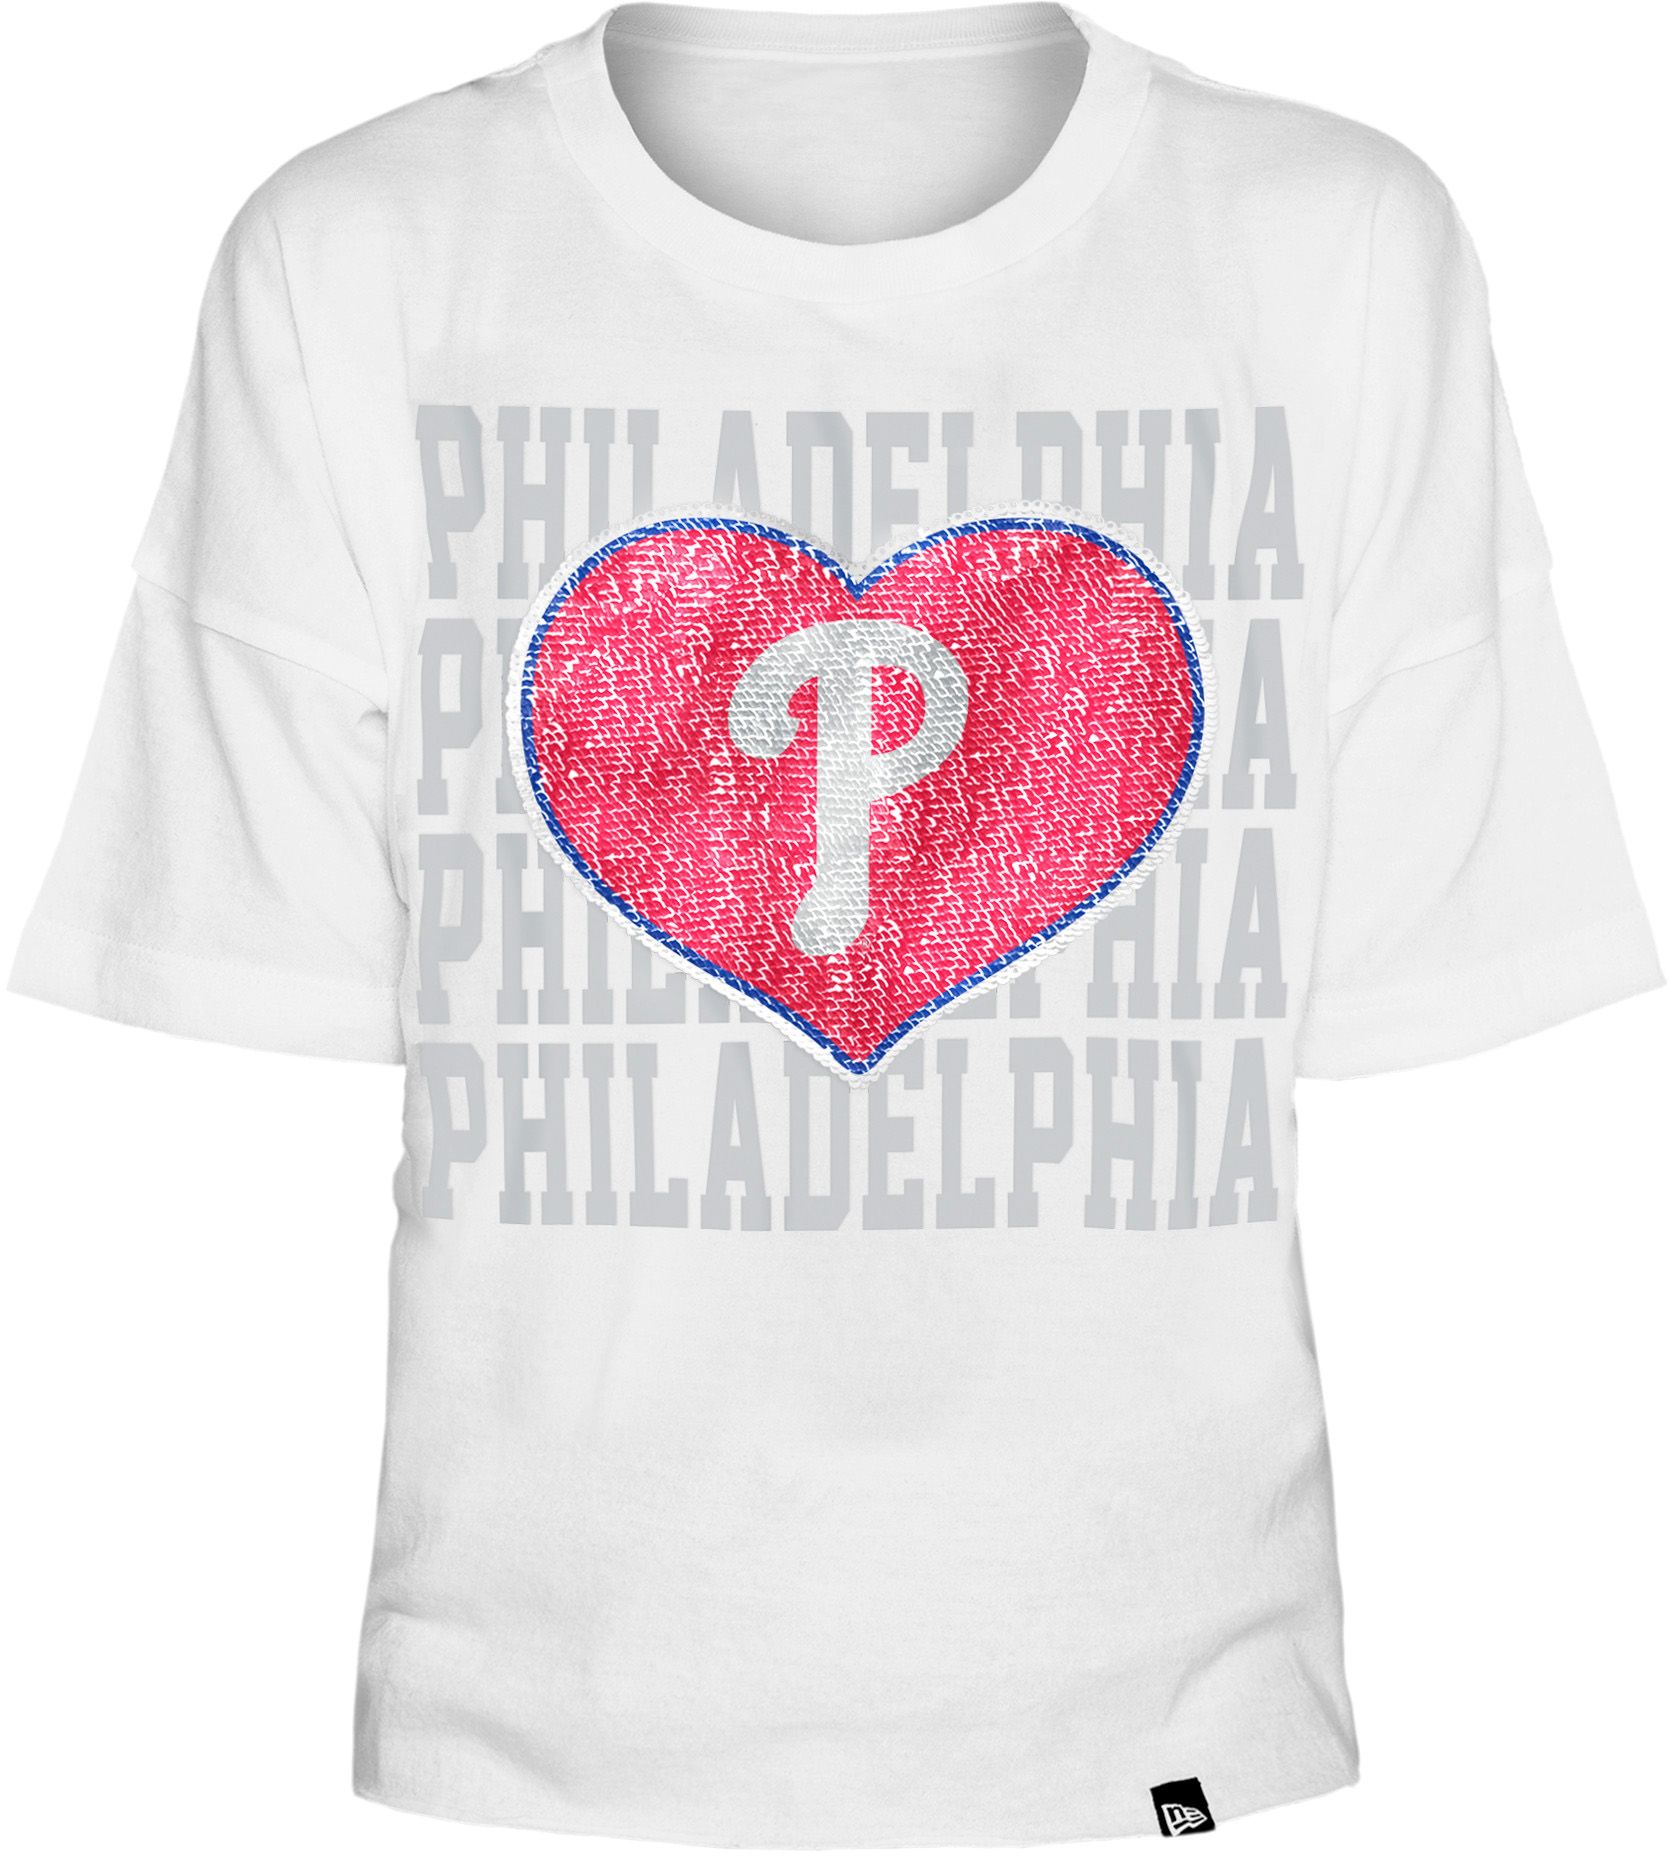 phillies pink shirt